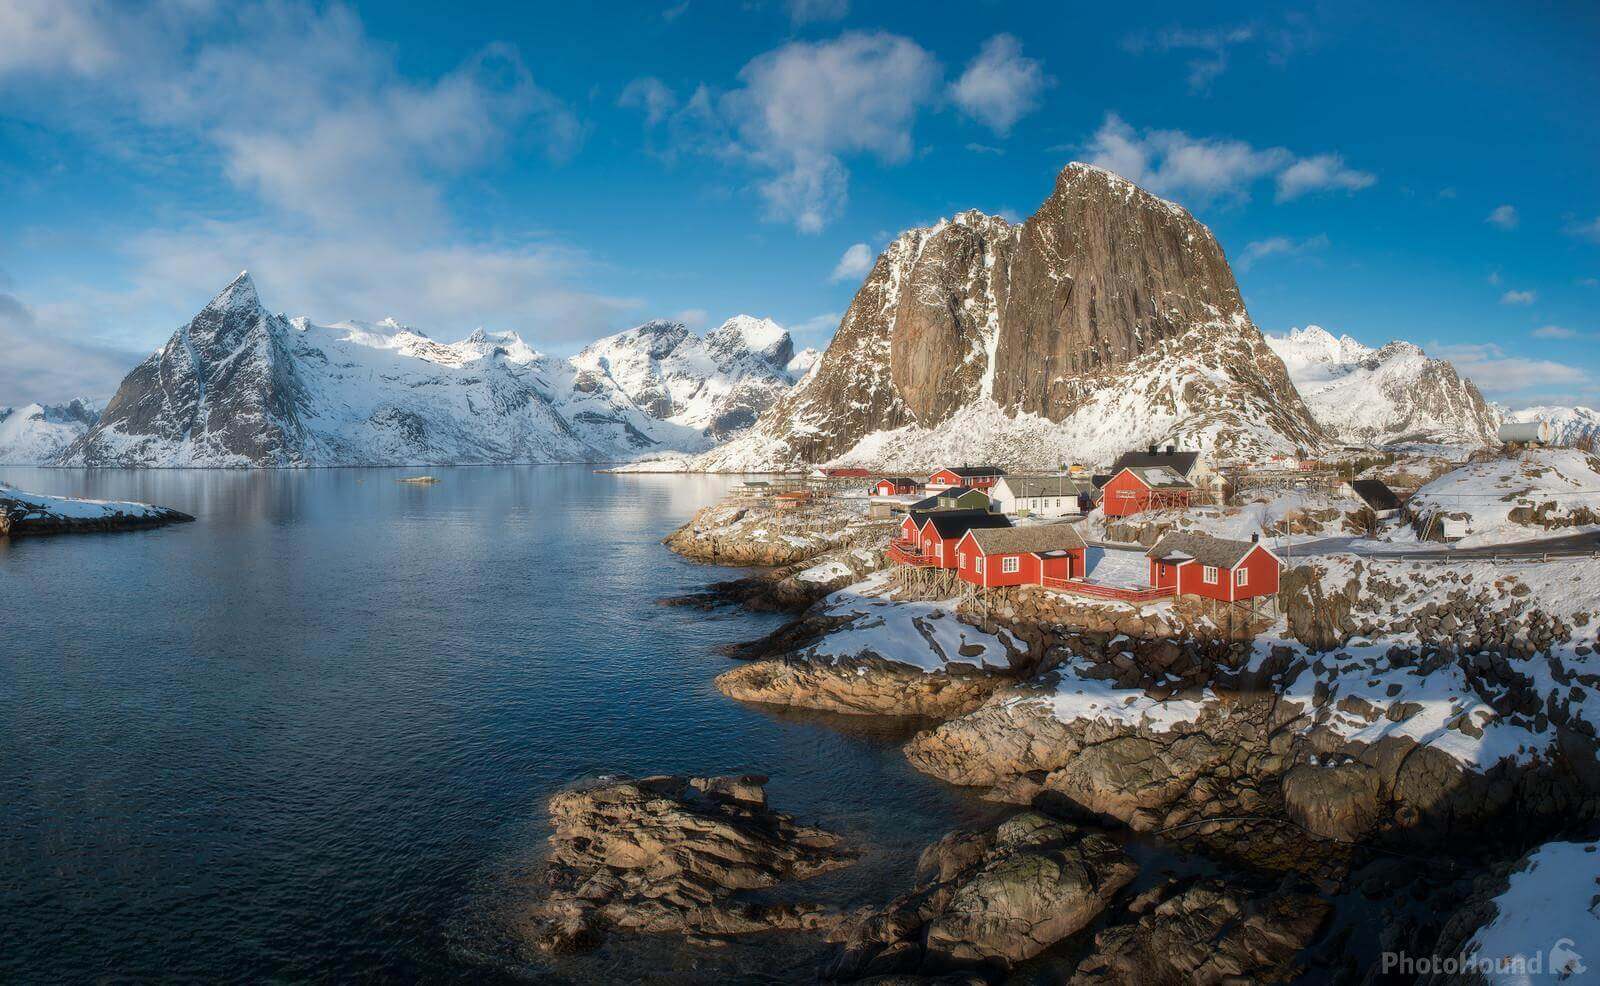 Norway photo locations